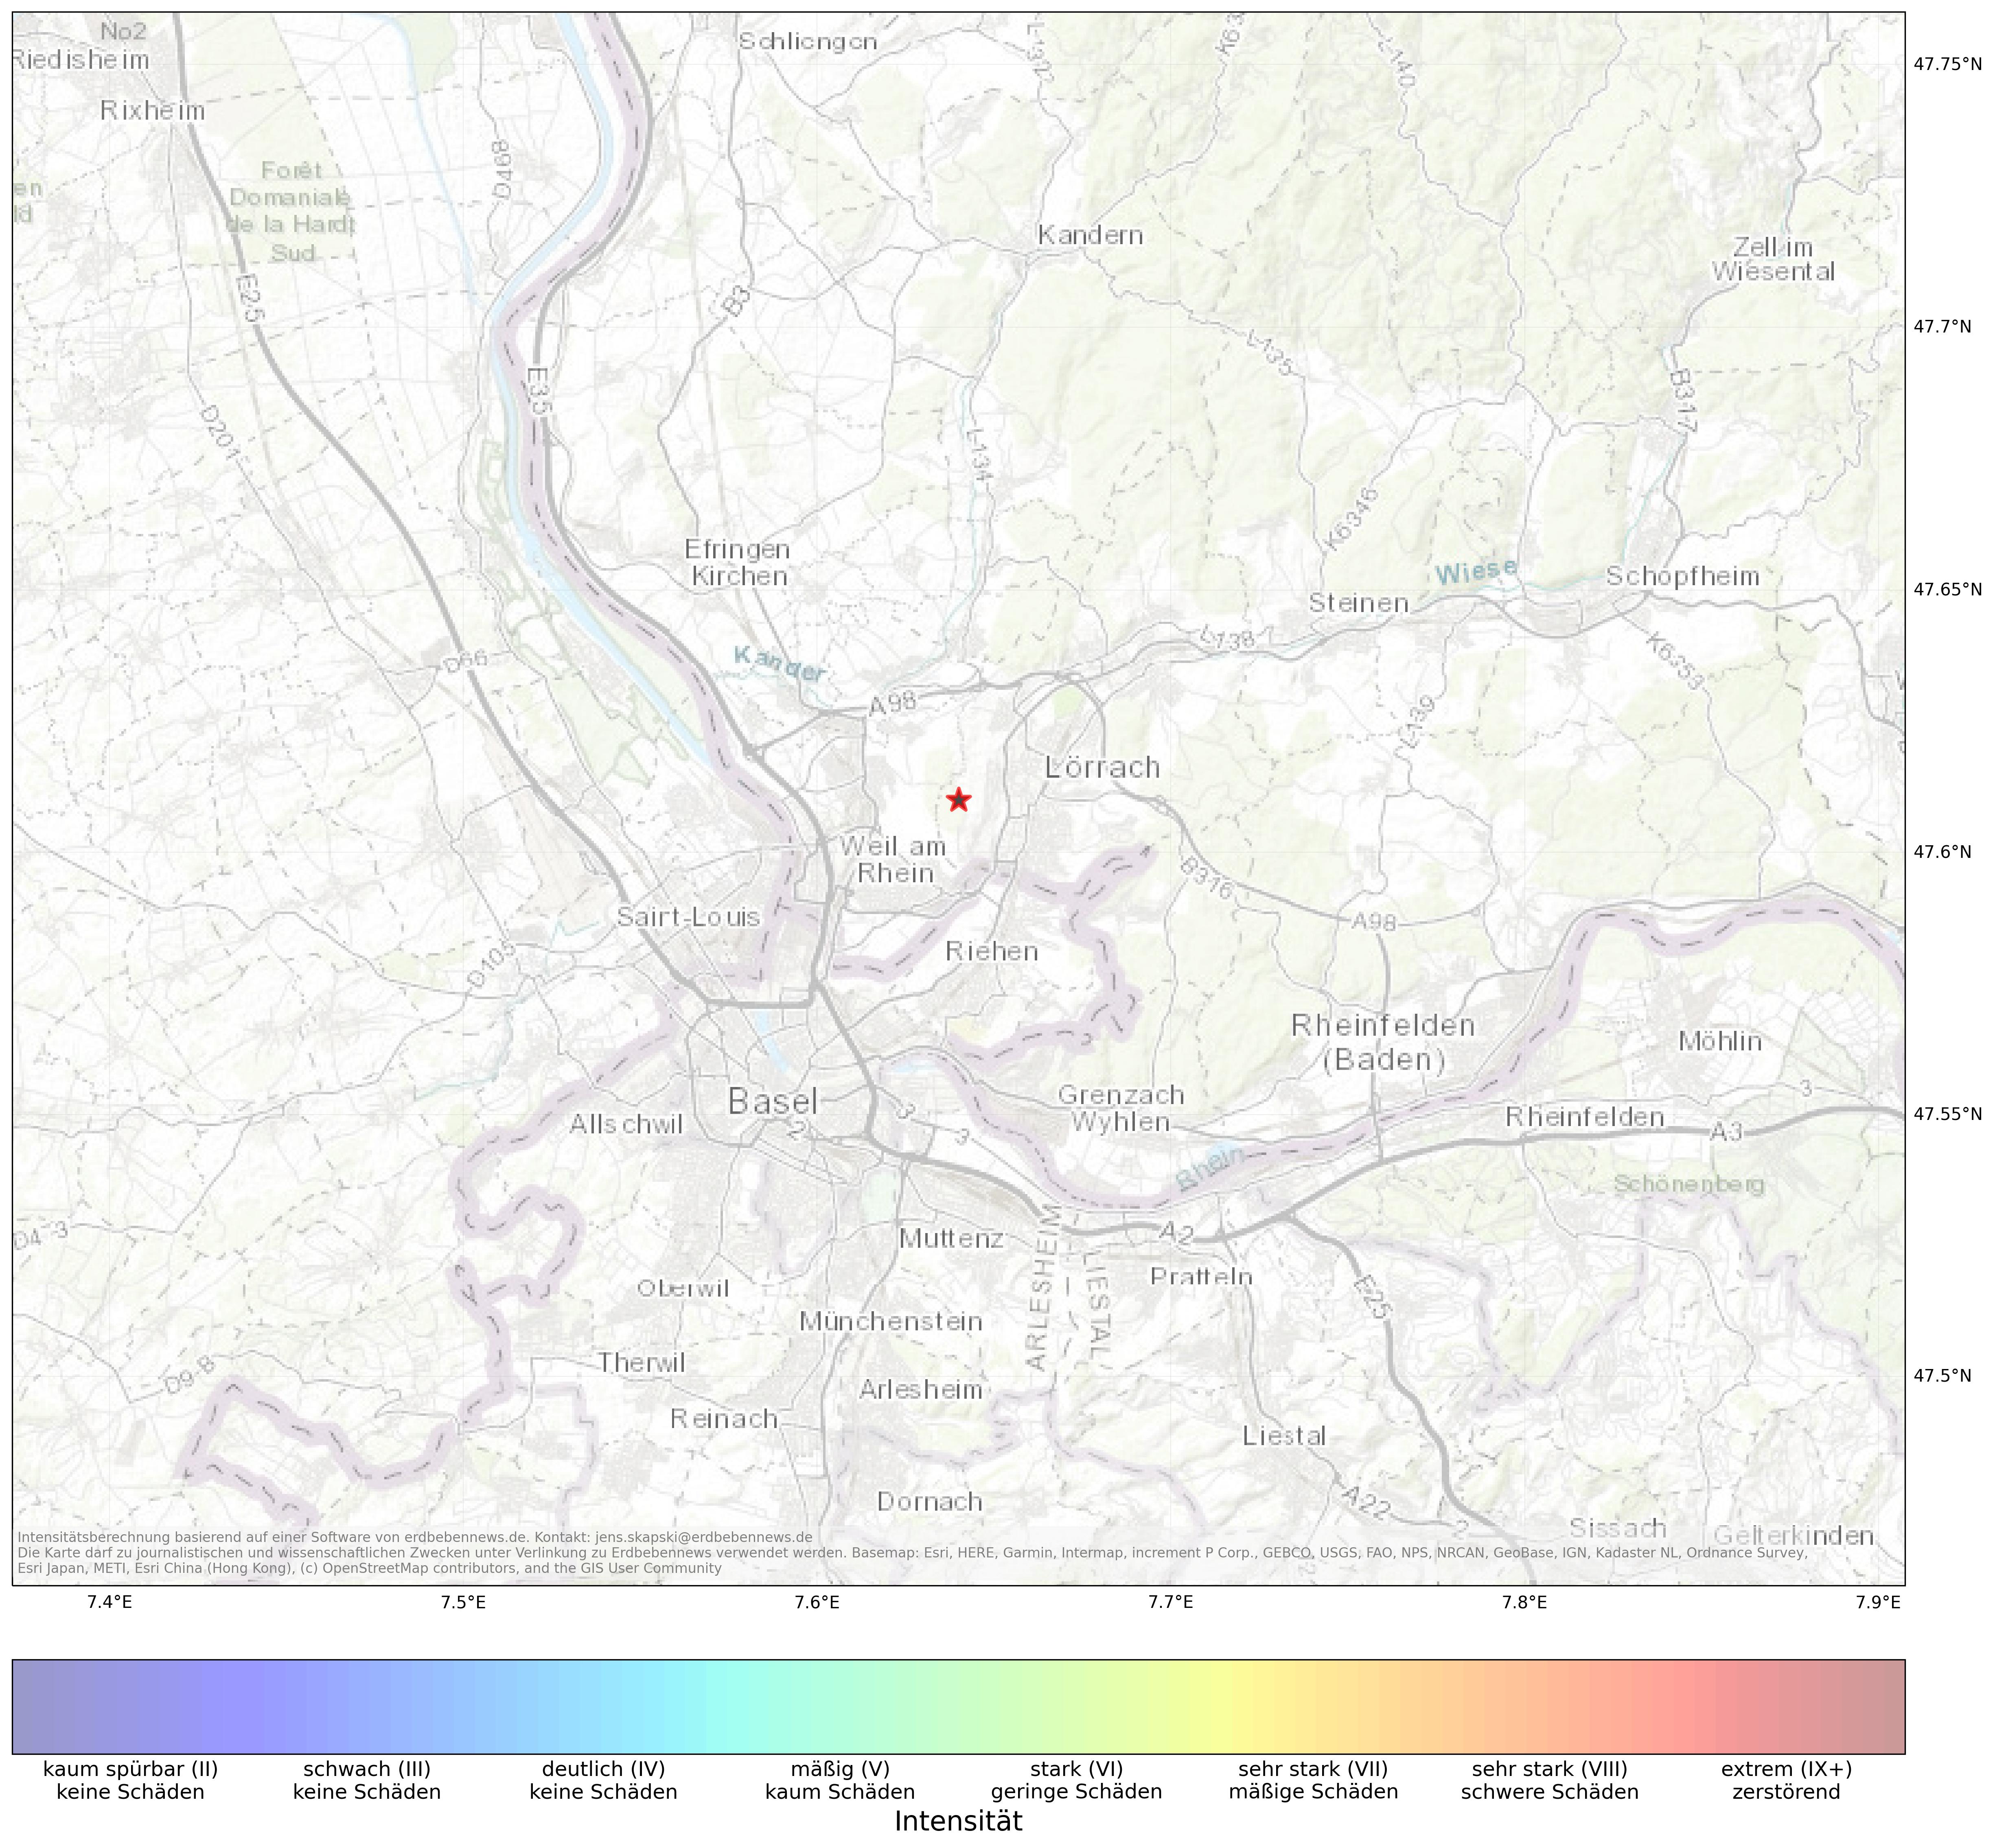 Berechnete Intensität (ShakeMap) des Erdbebens der Stärke 1.5 am 10. March, 09:33 in Schweiz